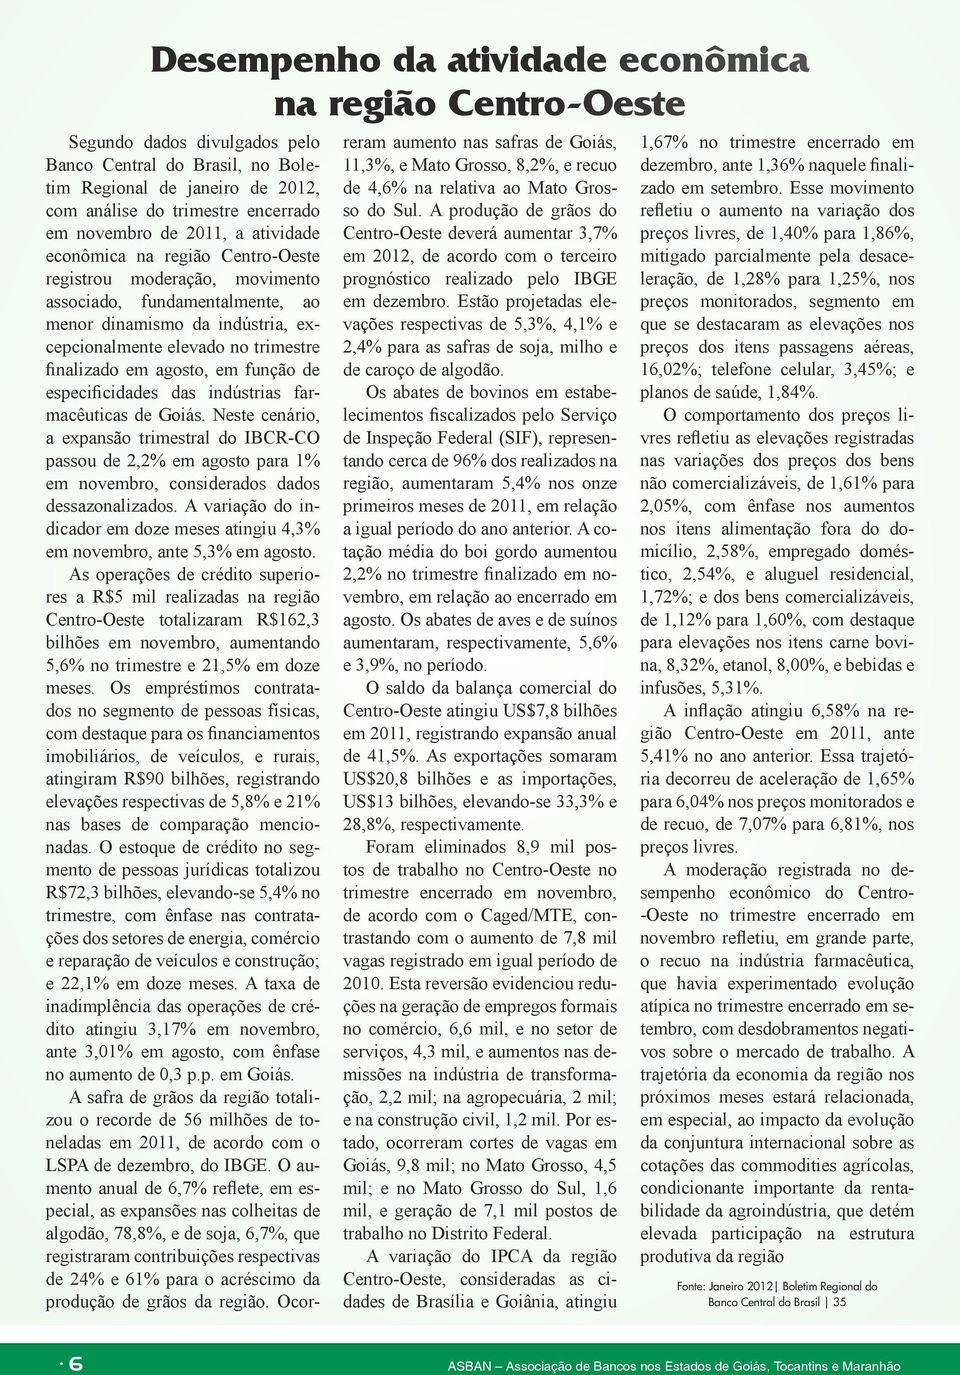 agosto, em função de especificidades das indústrias farmacêuticas de Goiás.